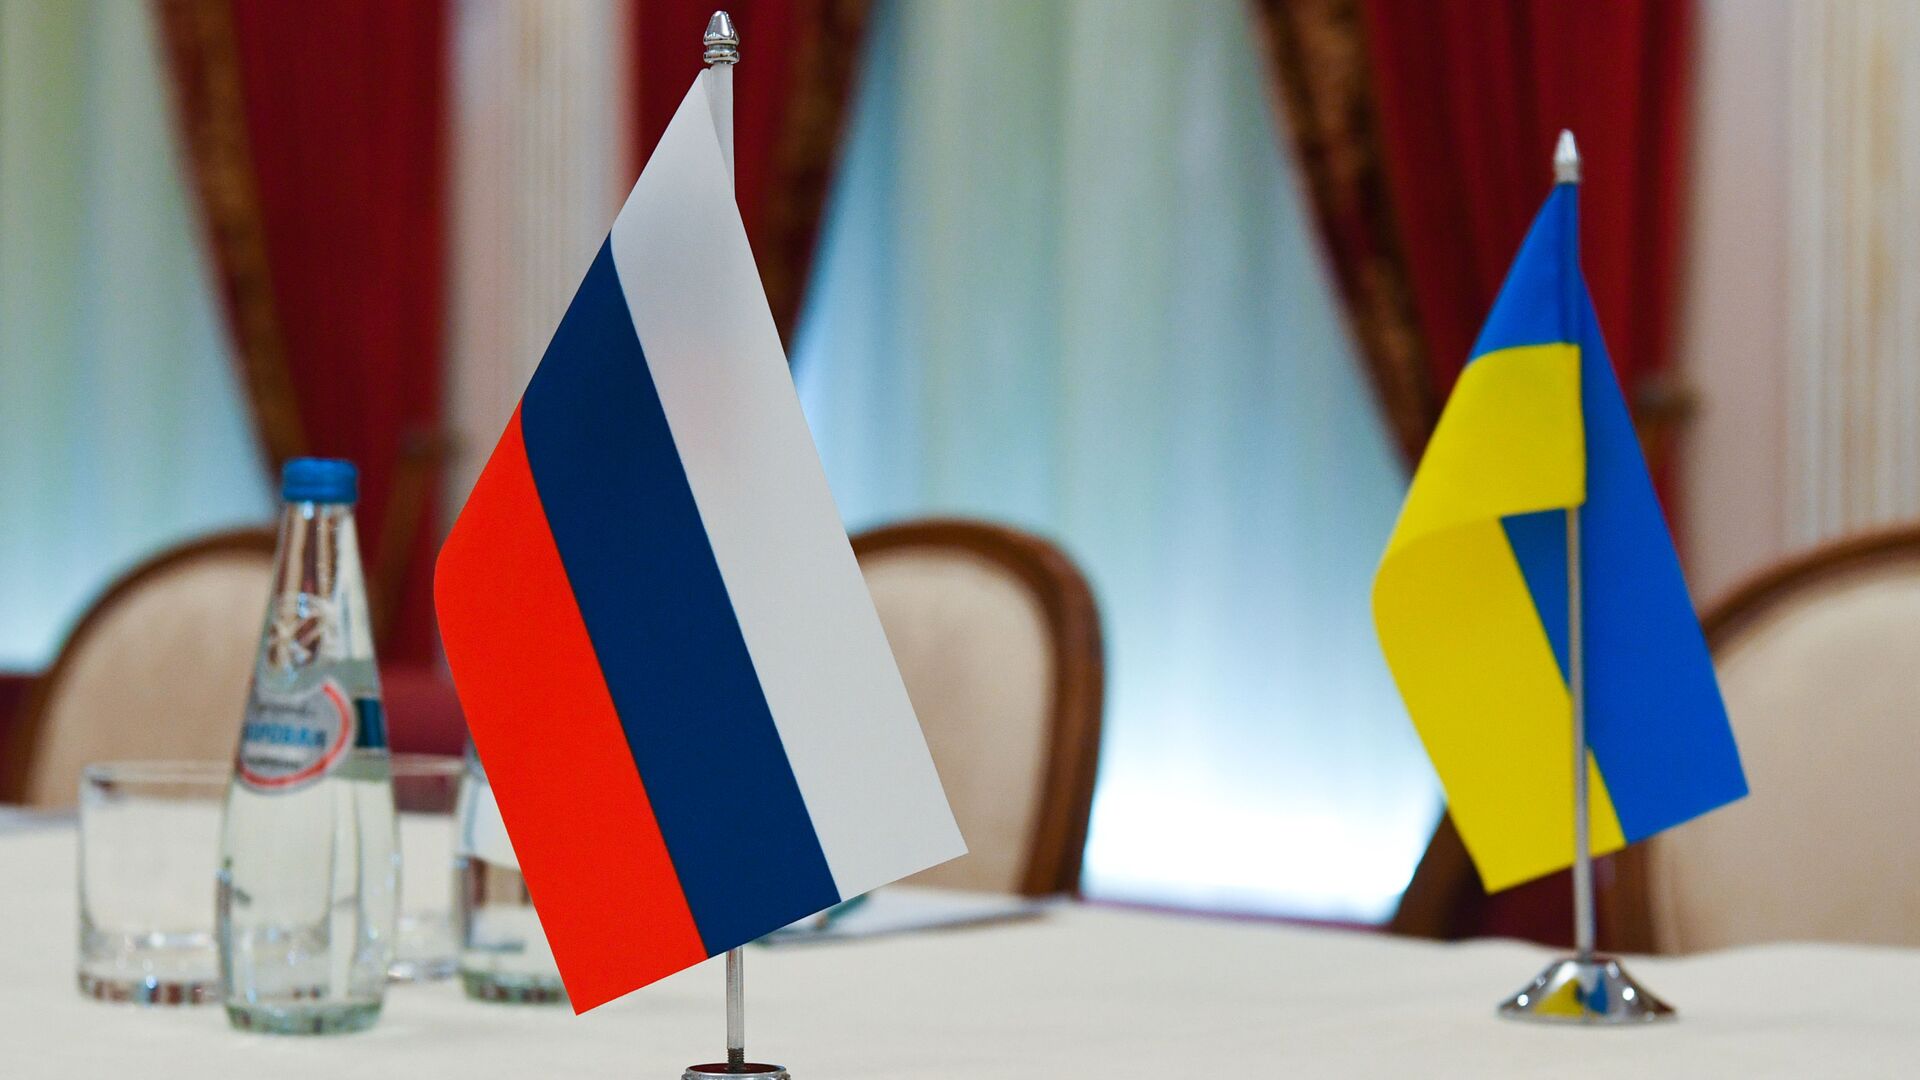 Флаги России и Украины в зале, где пройдут переговоры - Sputnik Таджикистан, 1920, 09.03.2022